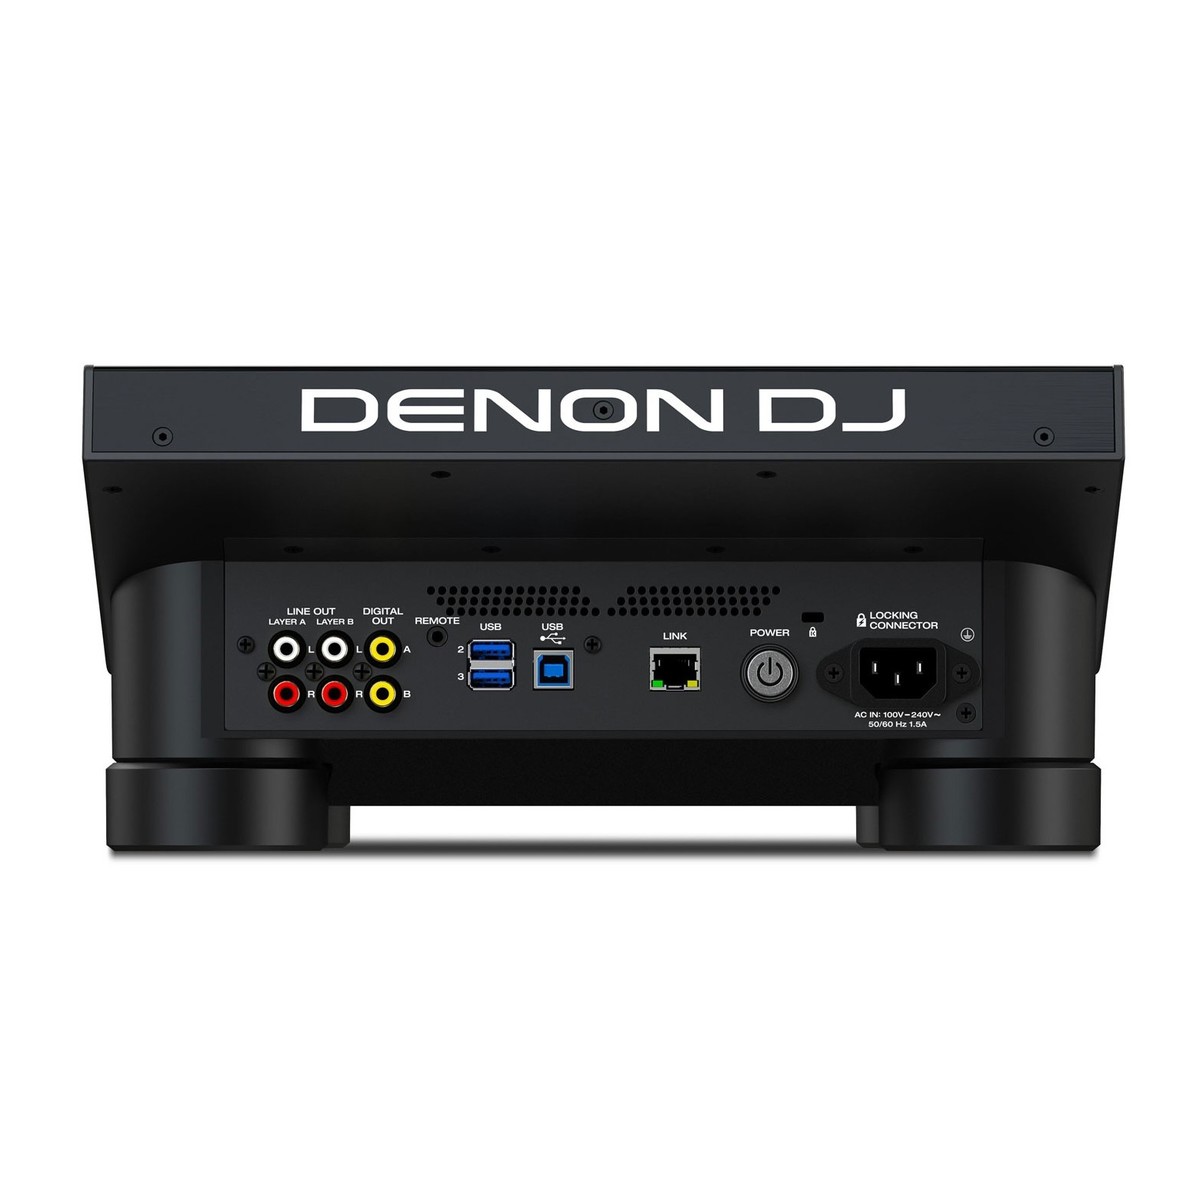 DENON DJ SC6000 M PRIME LETTORE MEDIA PLAYER DUAL LAYER CON PIATTO MOTORIZZATO PER DJ USB SD STREAMING WI-FI DISPLAY HD 10.1 1